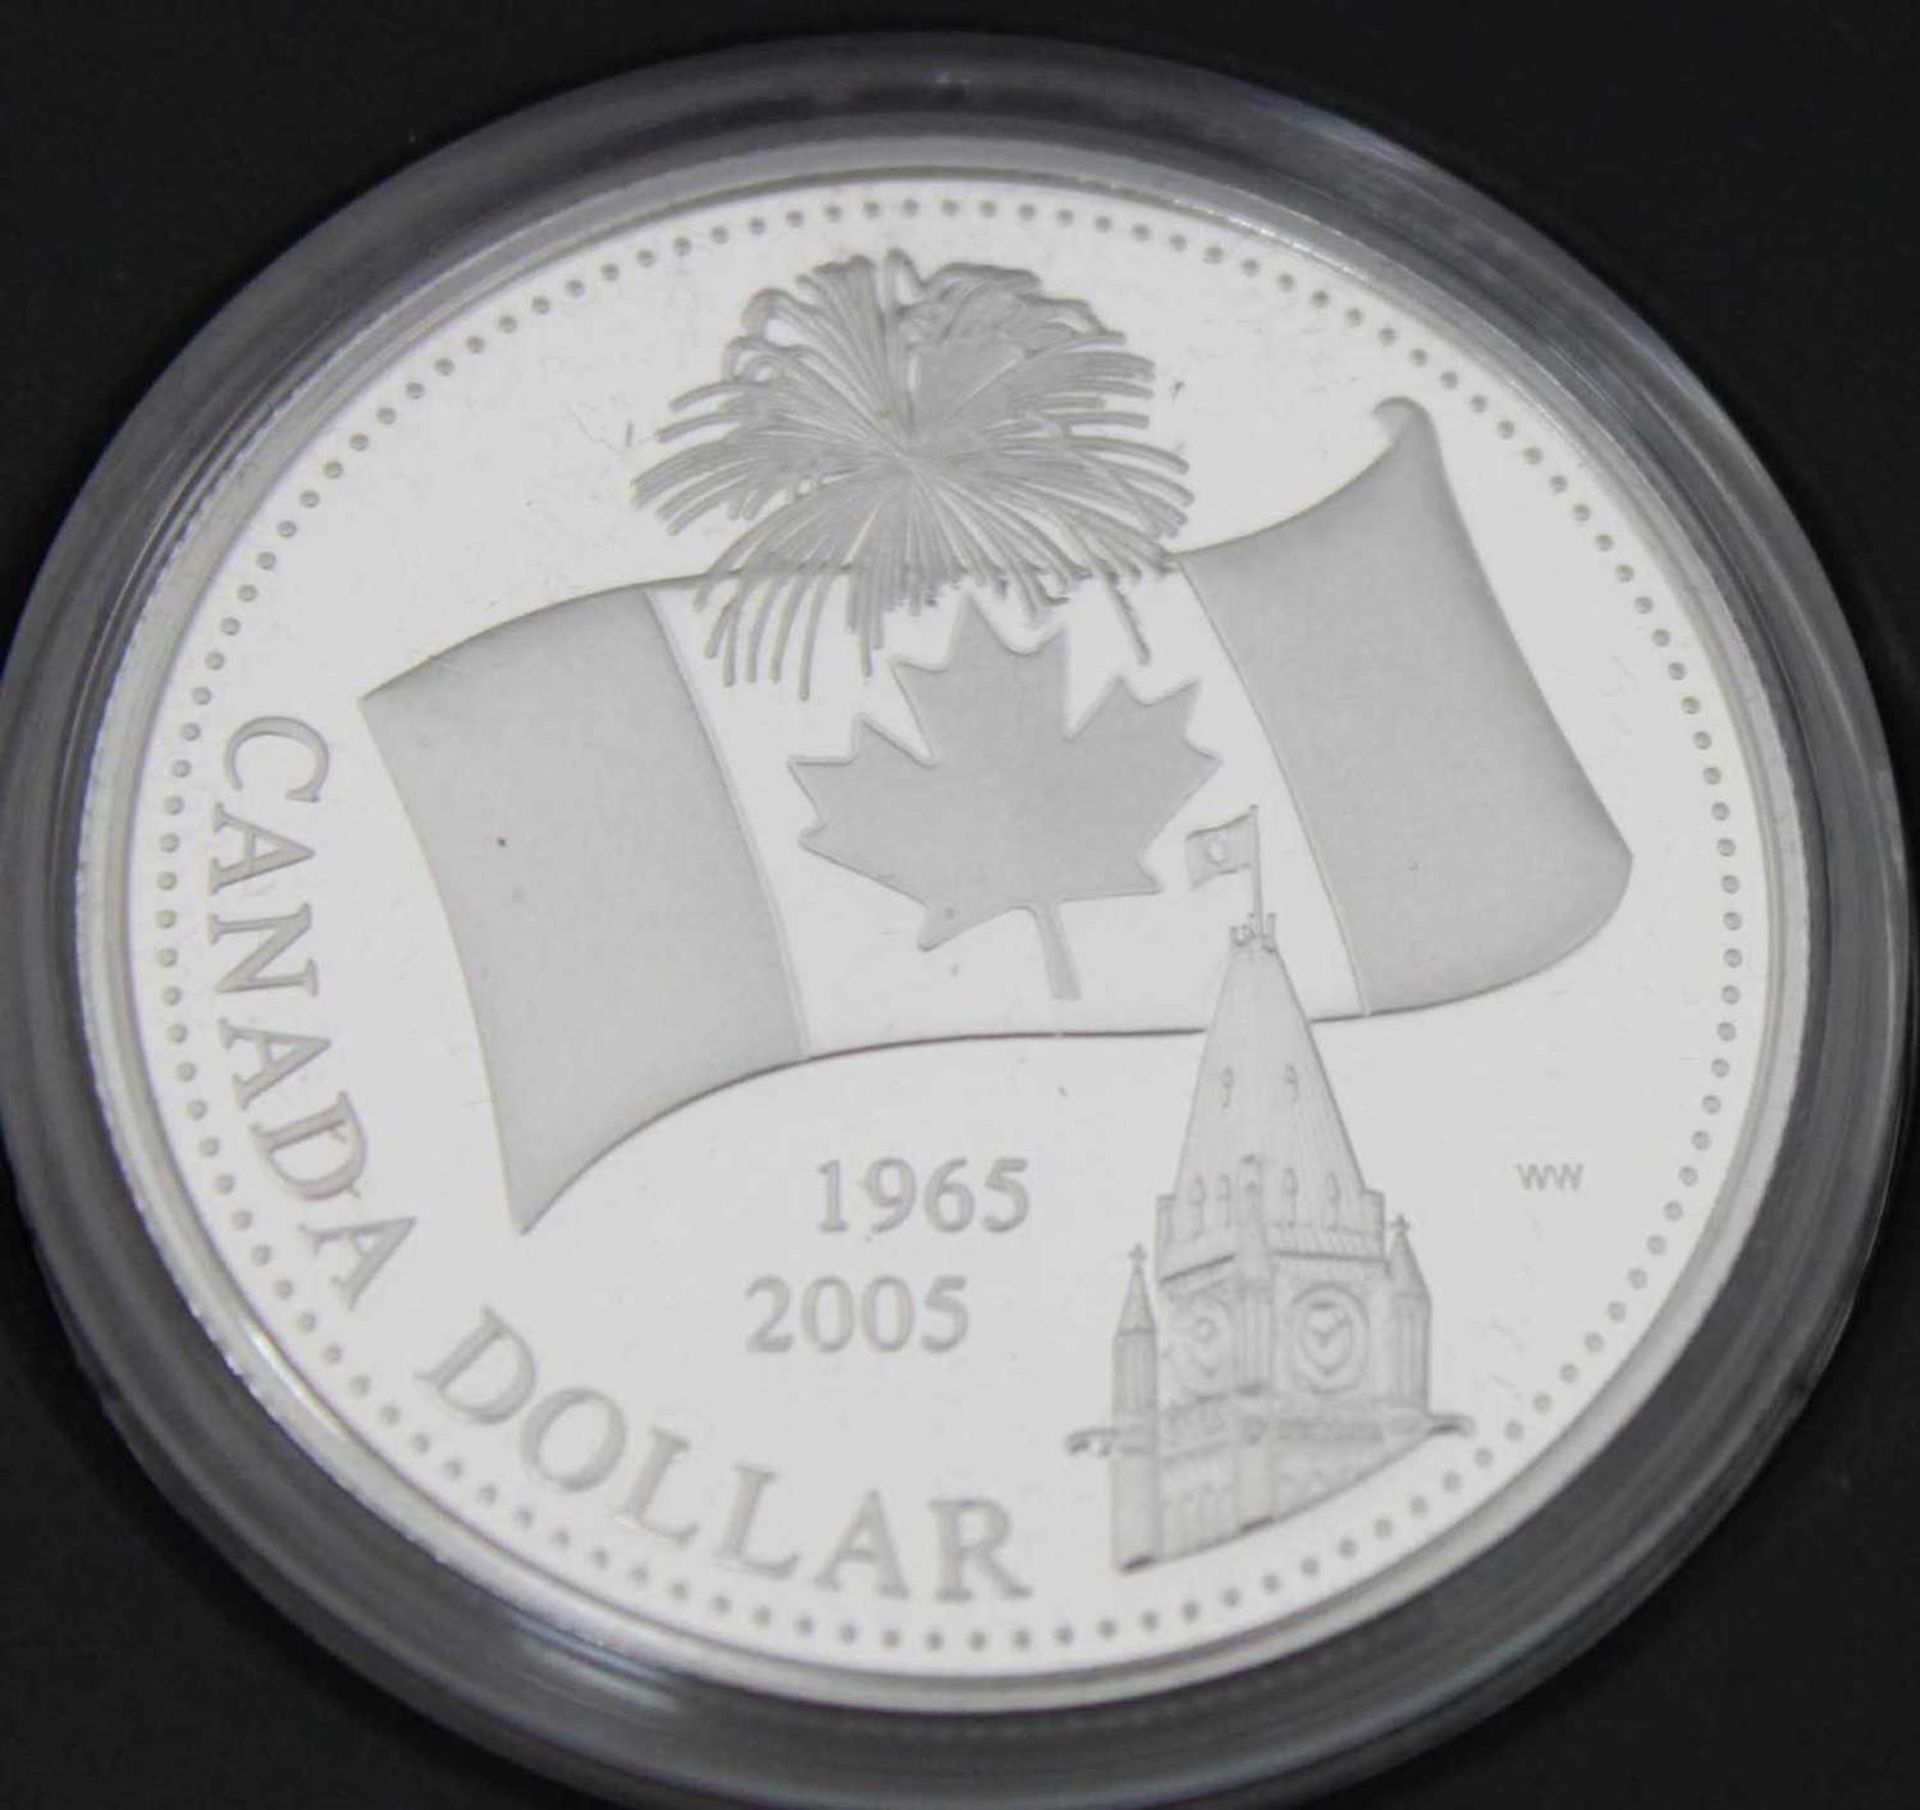 Canada Dollar von 2005, Nationalflagge 40. Jahrestag, Proof Silver Dollar. Canada Dollar 2005, - Bild 2 aus 2